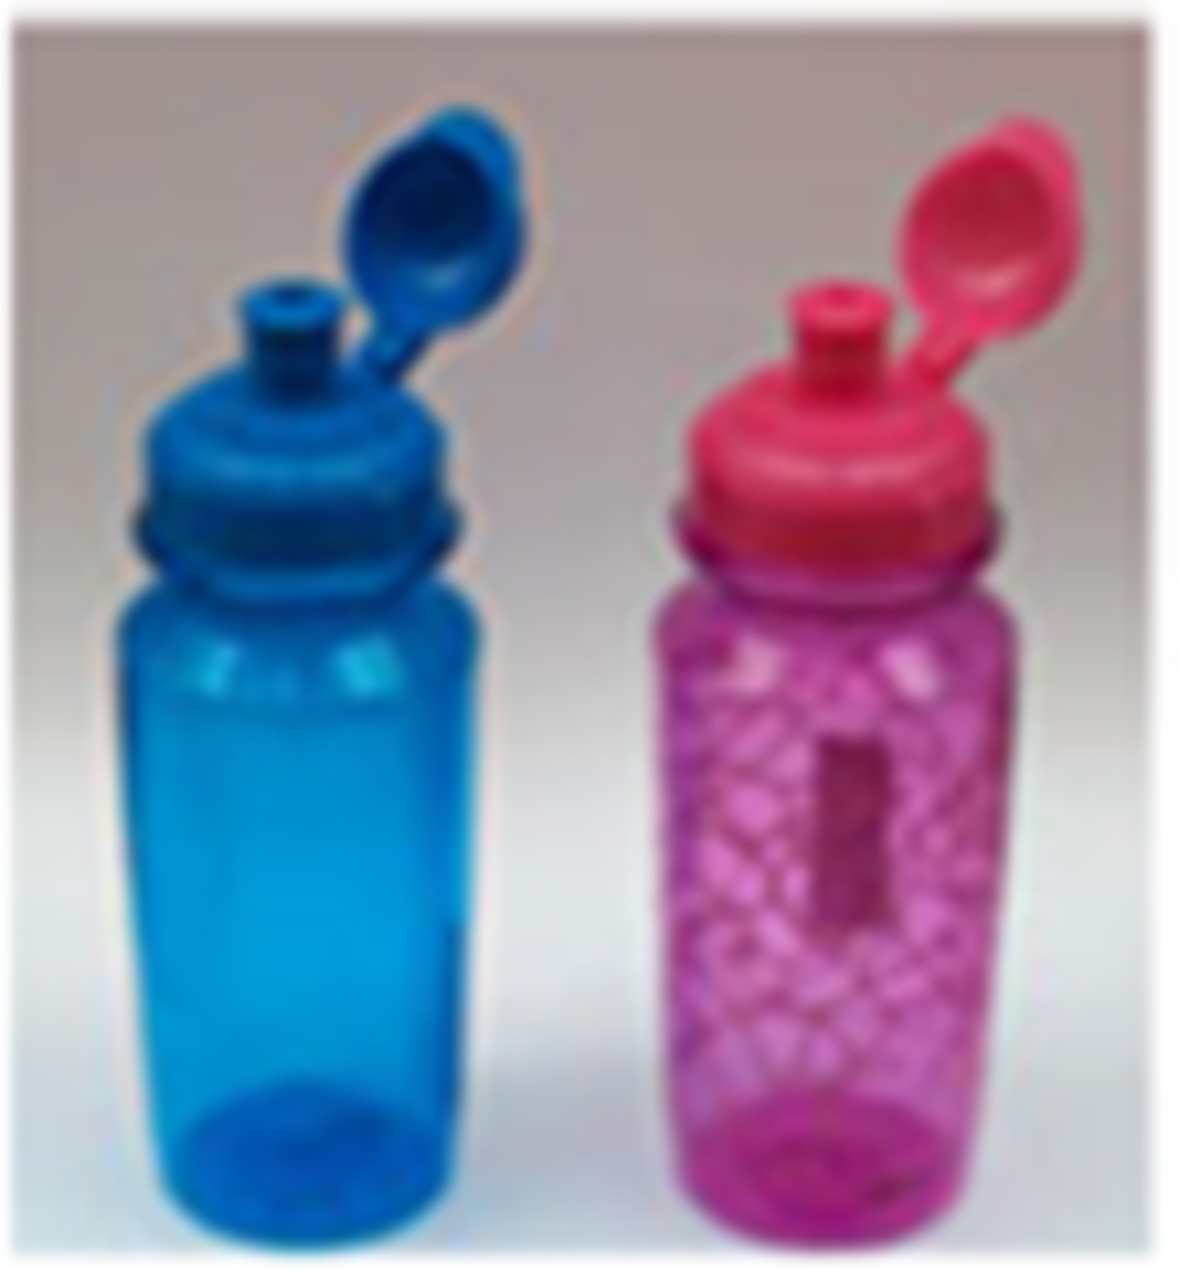 Ανακαλείται μπουκάλι νερού για παιδιά